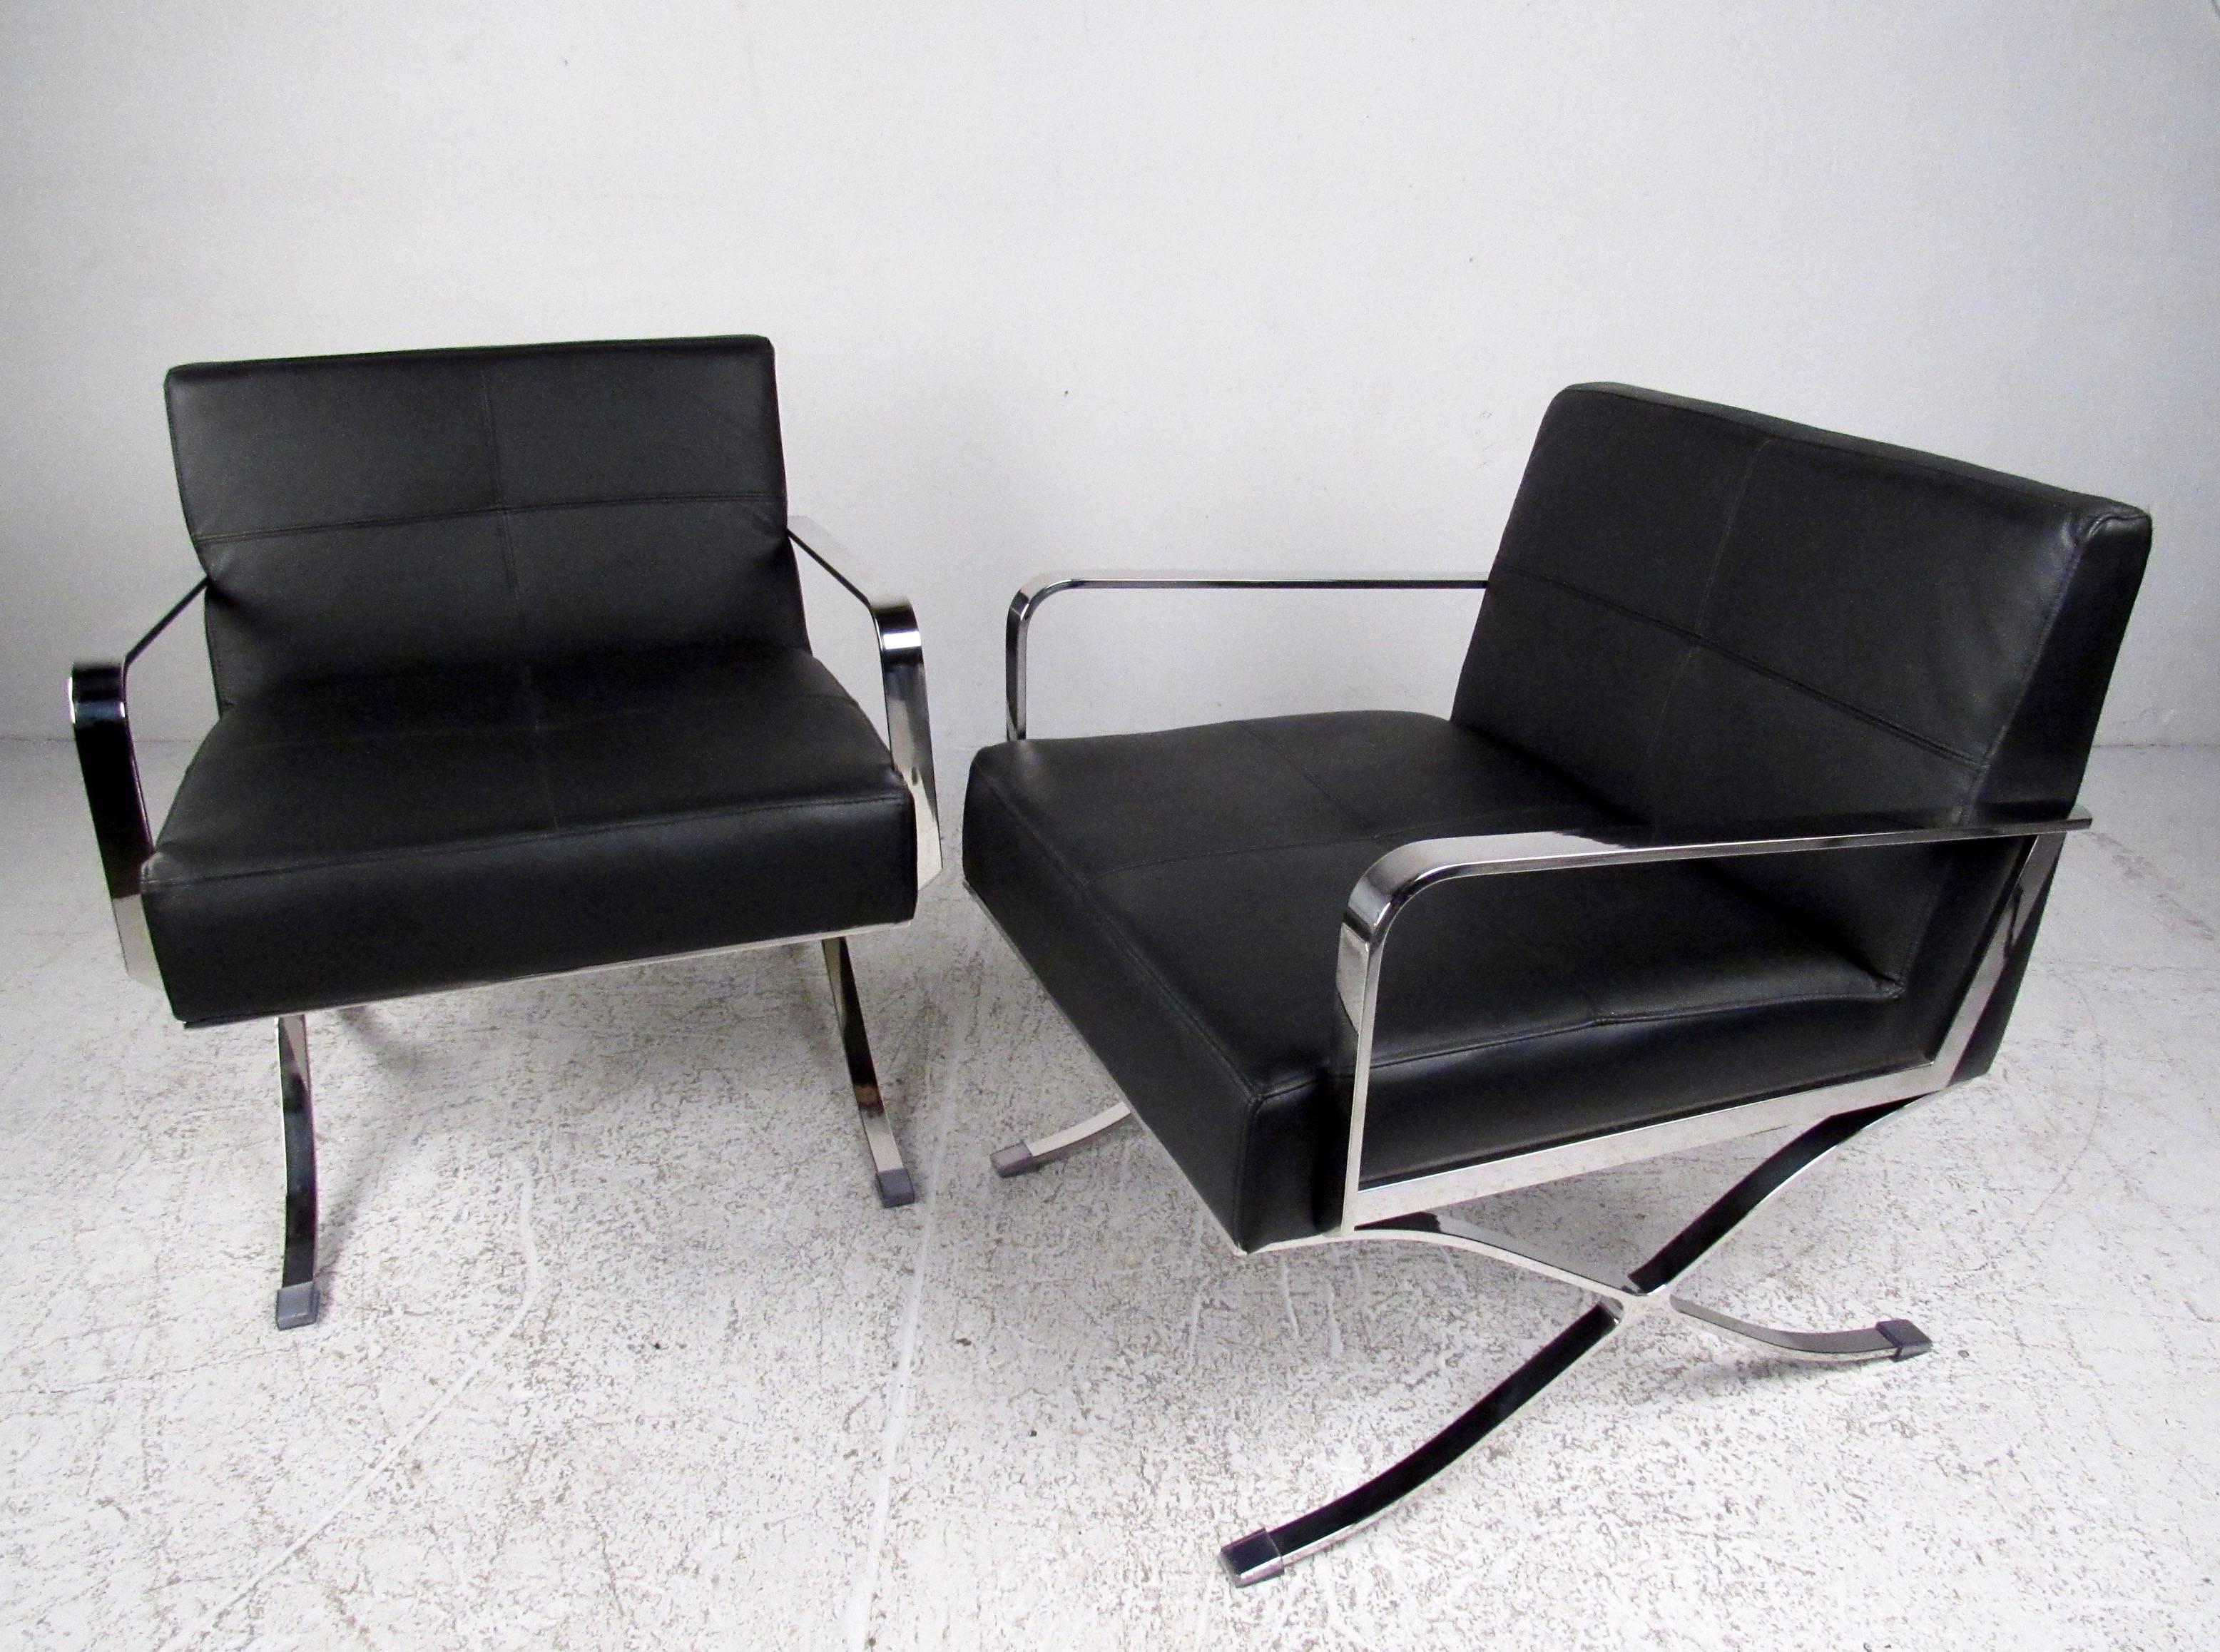 Der Midcentury-Stil und die elegante Schlichtheit machen dieses Paar moderner Sessel zu einer auffälligen Ergänzung für Ihr Zuhause oder Ihr Büro. Schwere, verchromte Flachstangenstühle mit stilvollem X-Stil-Fuß. Bitte bestätigen Sie den Standort